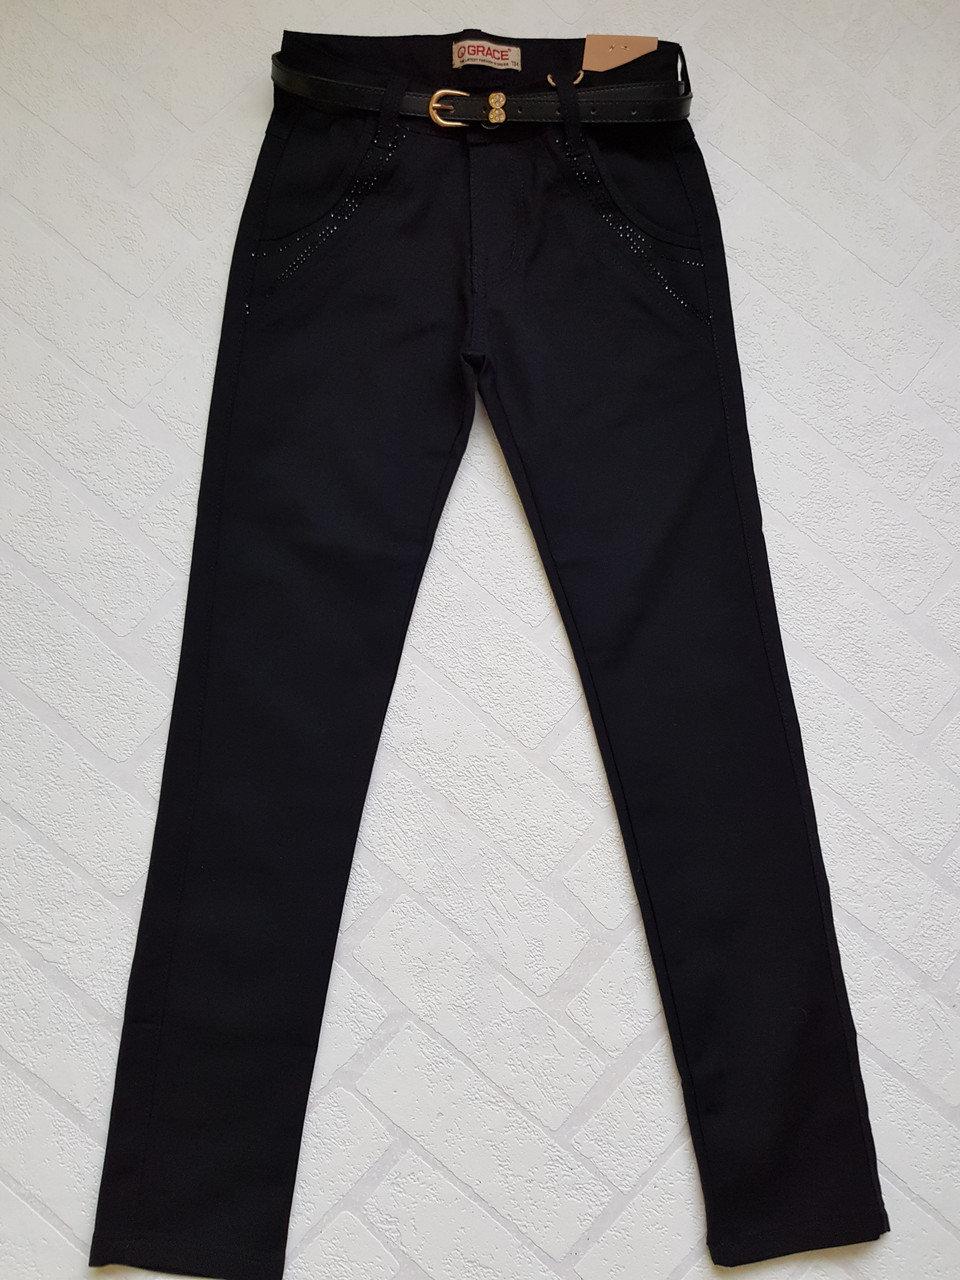 Чорні,Котонові стрейчеві брюки для дівчаток.Розміри 134-164 см .Фірма GRACE.Угорщина